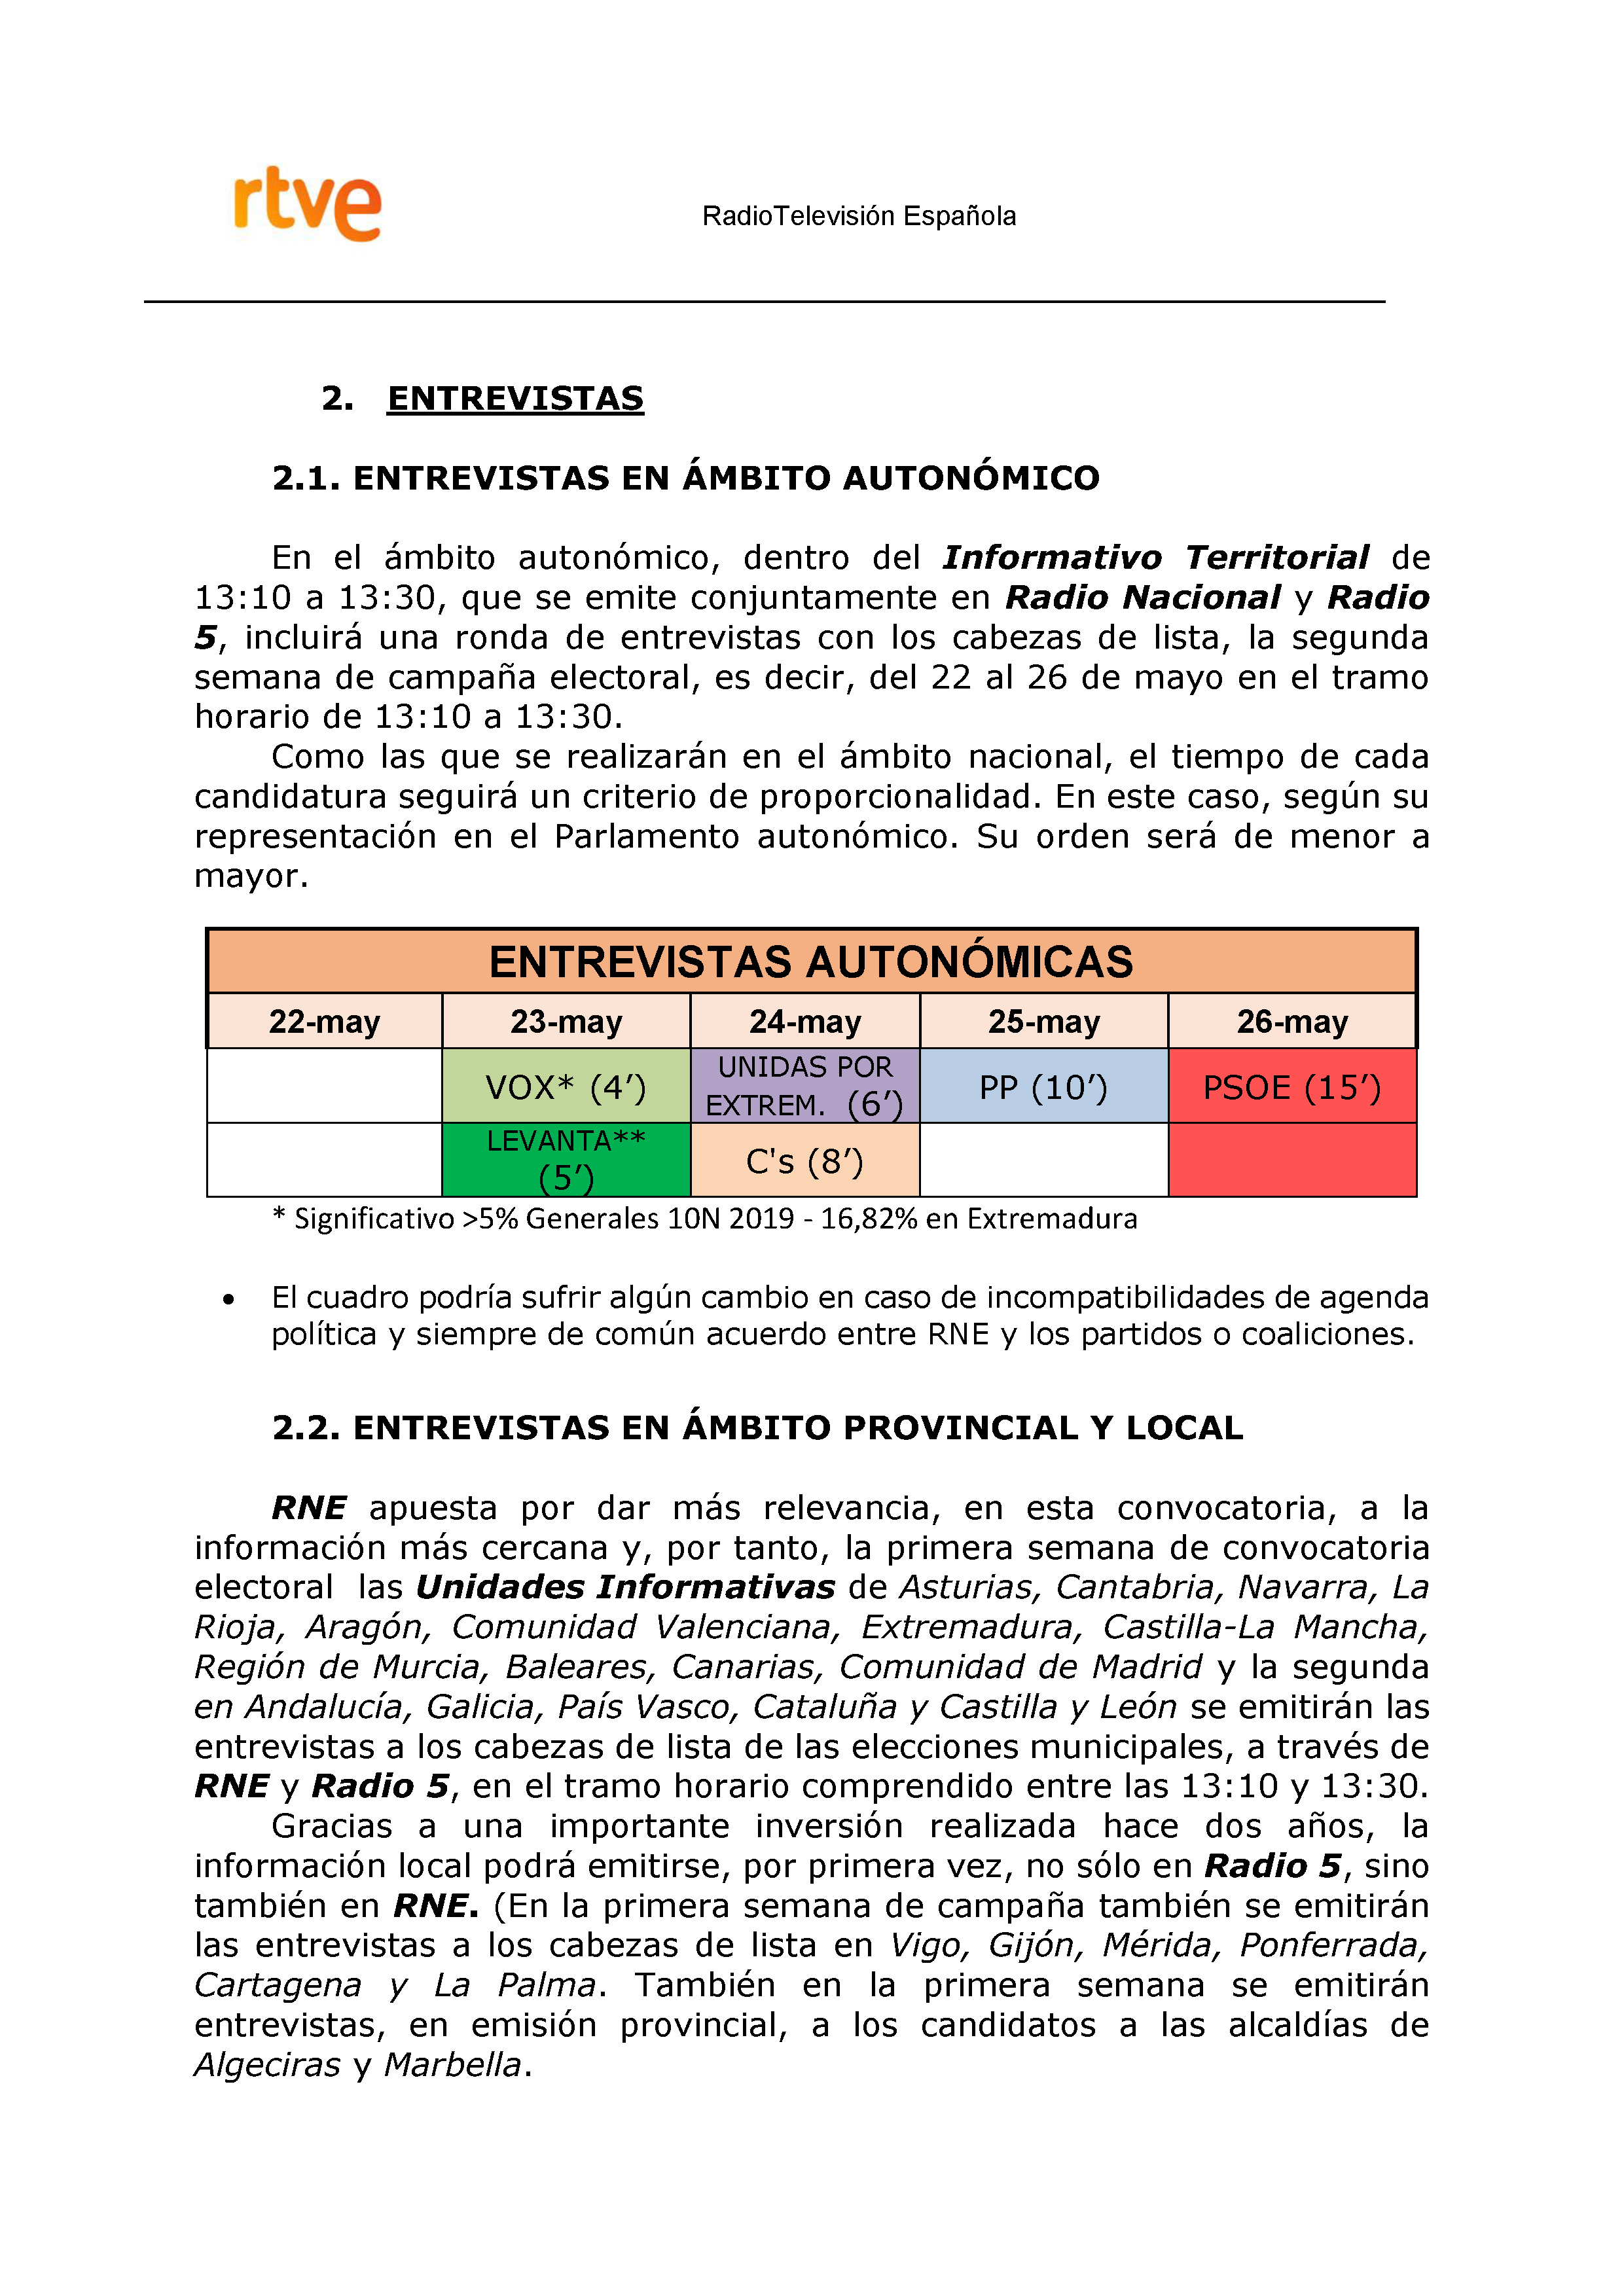 PLAN DE COBERTURA INFORMATIVA RTVE en Extremadura ELECCIONES MUNICIPALES Y AUTONÓMICAS Pag 11